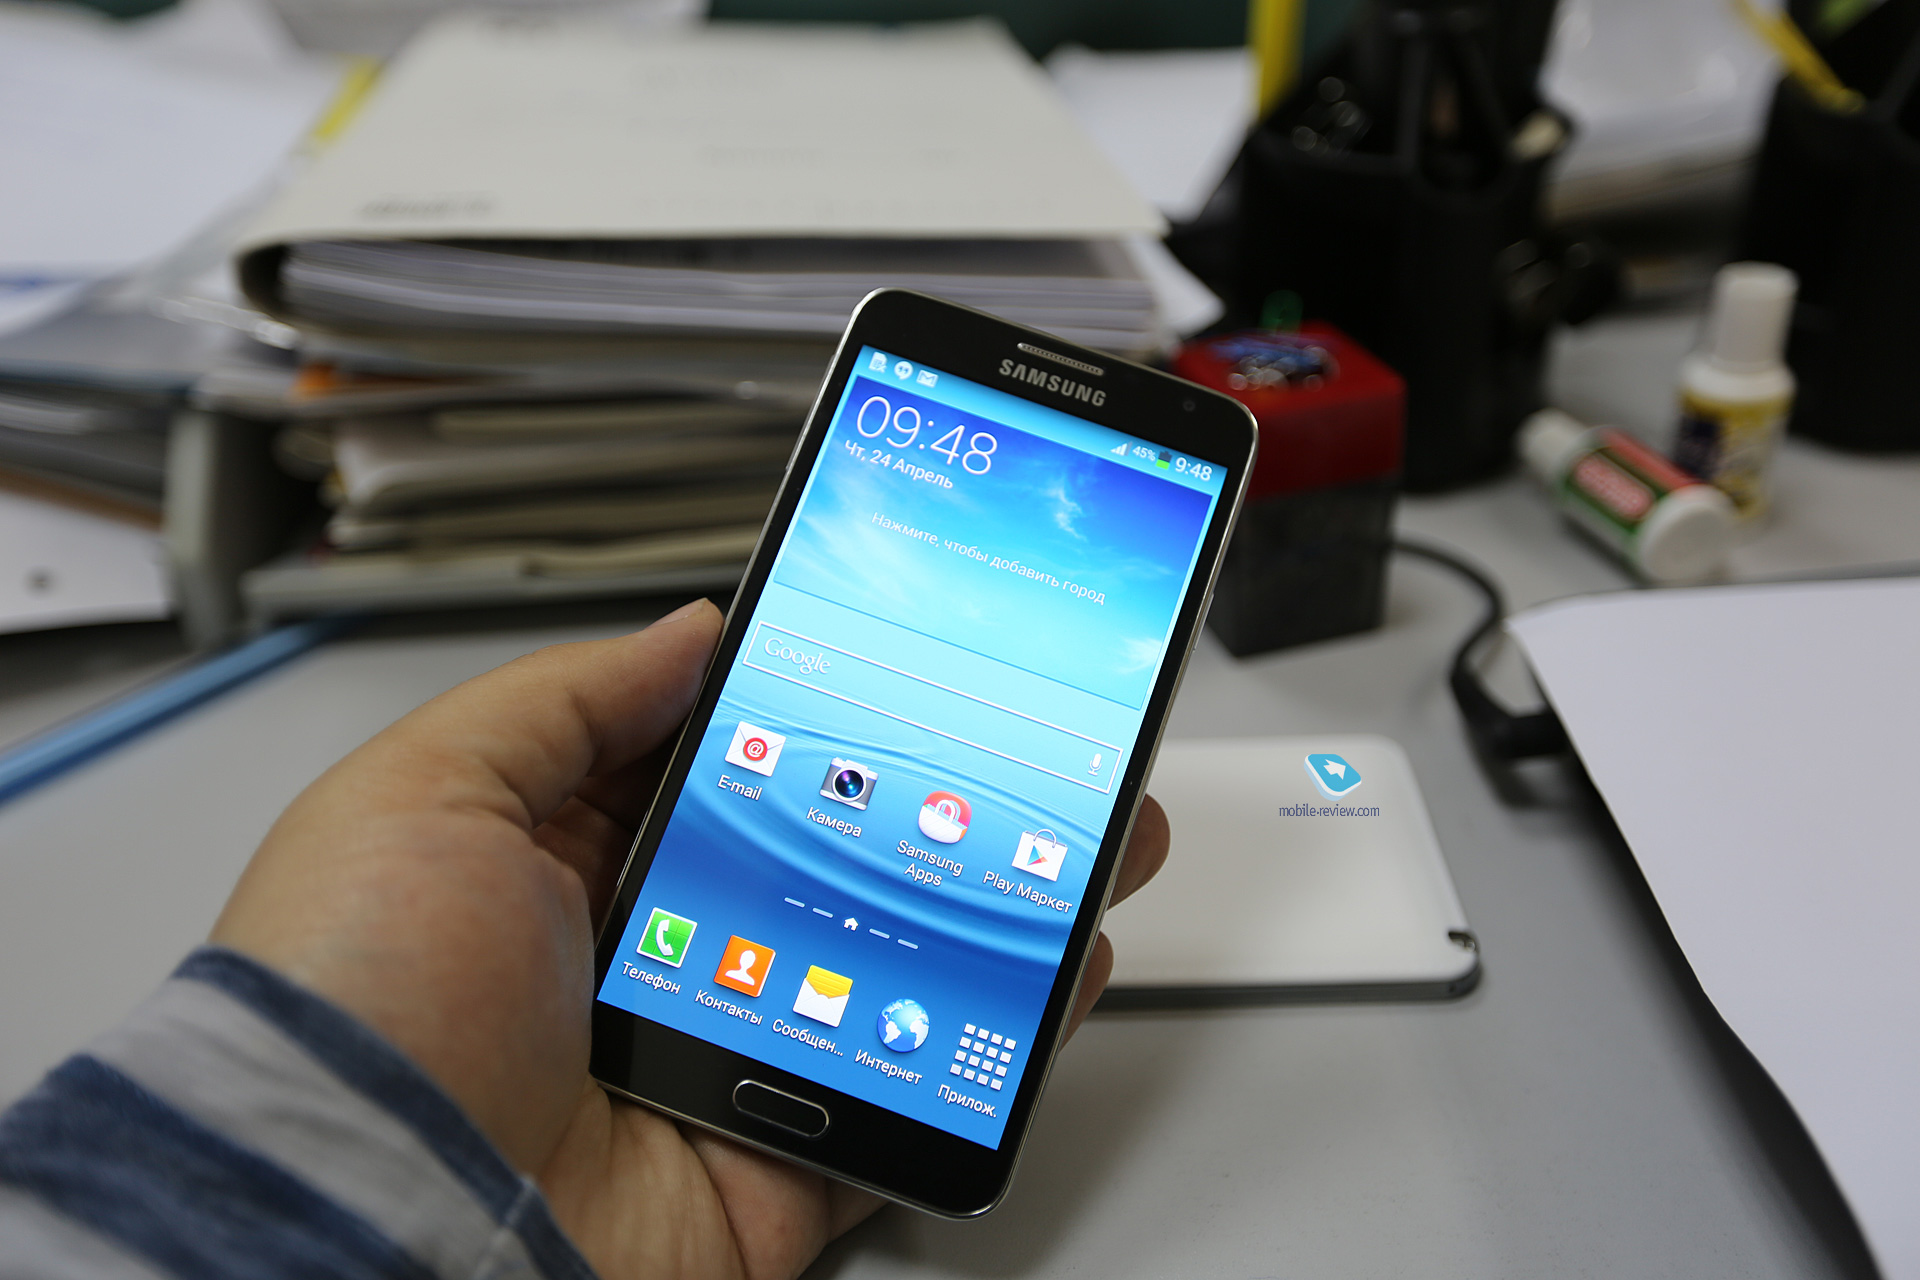 Samsung Galaxy Note 3 N7505